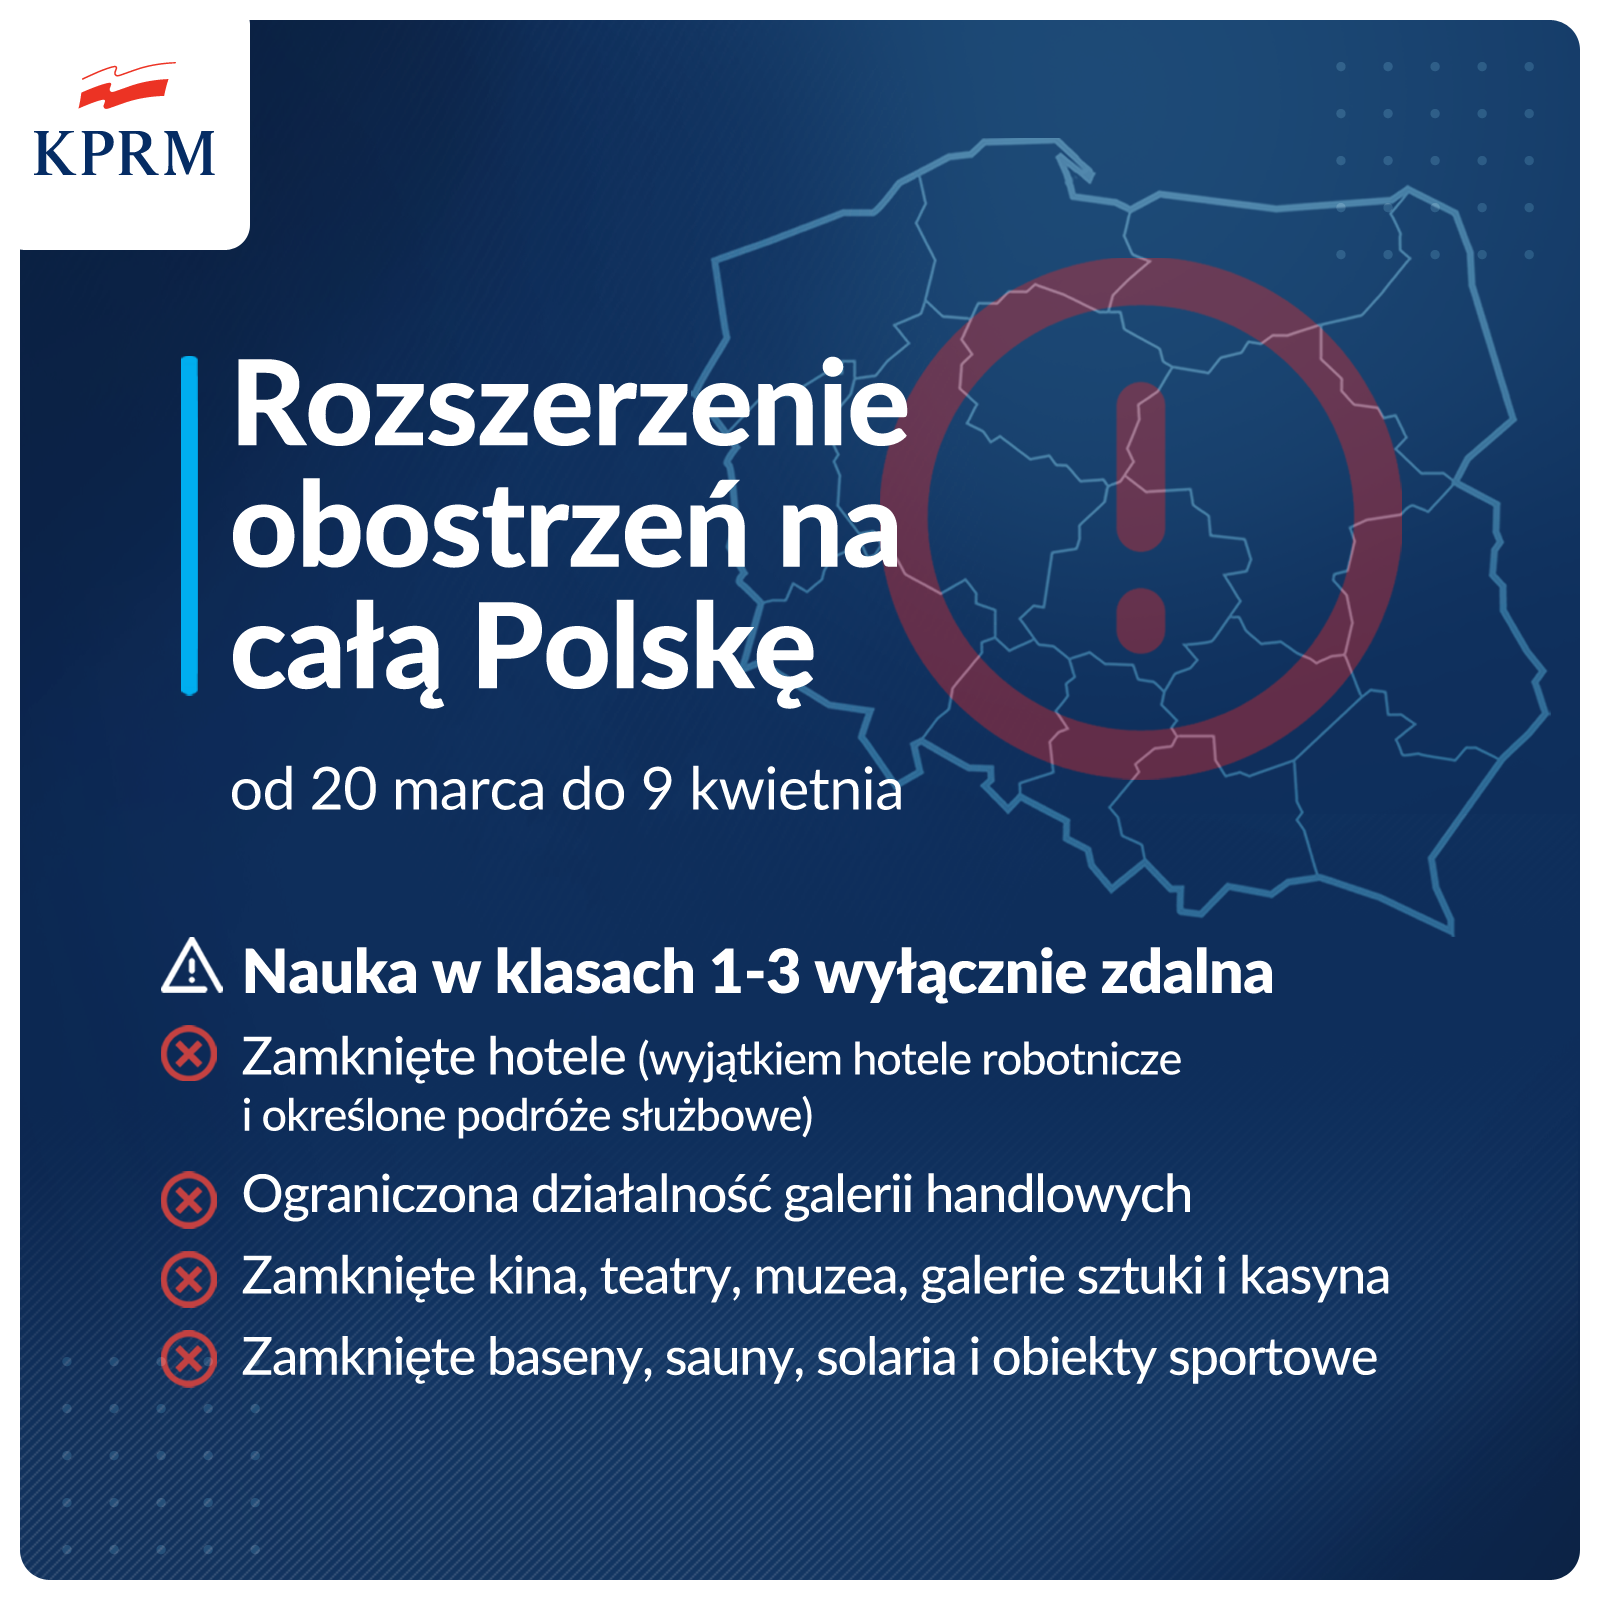 Grafika obrazująca rozszerzenie obostrzeń w całej Polsce od 20 marca do 9 kwietnia